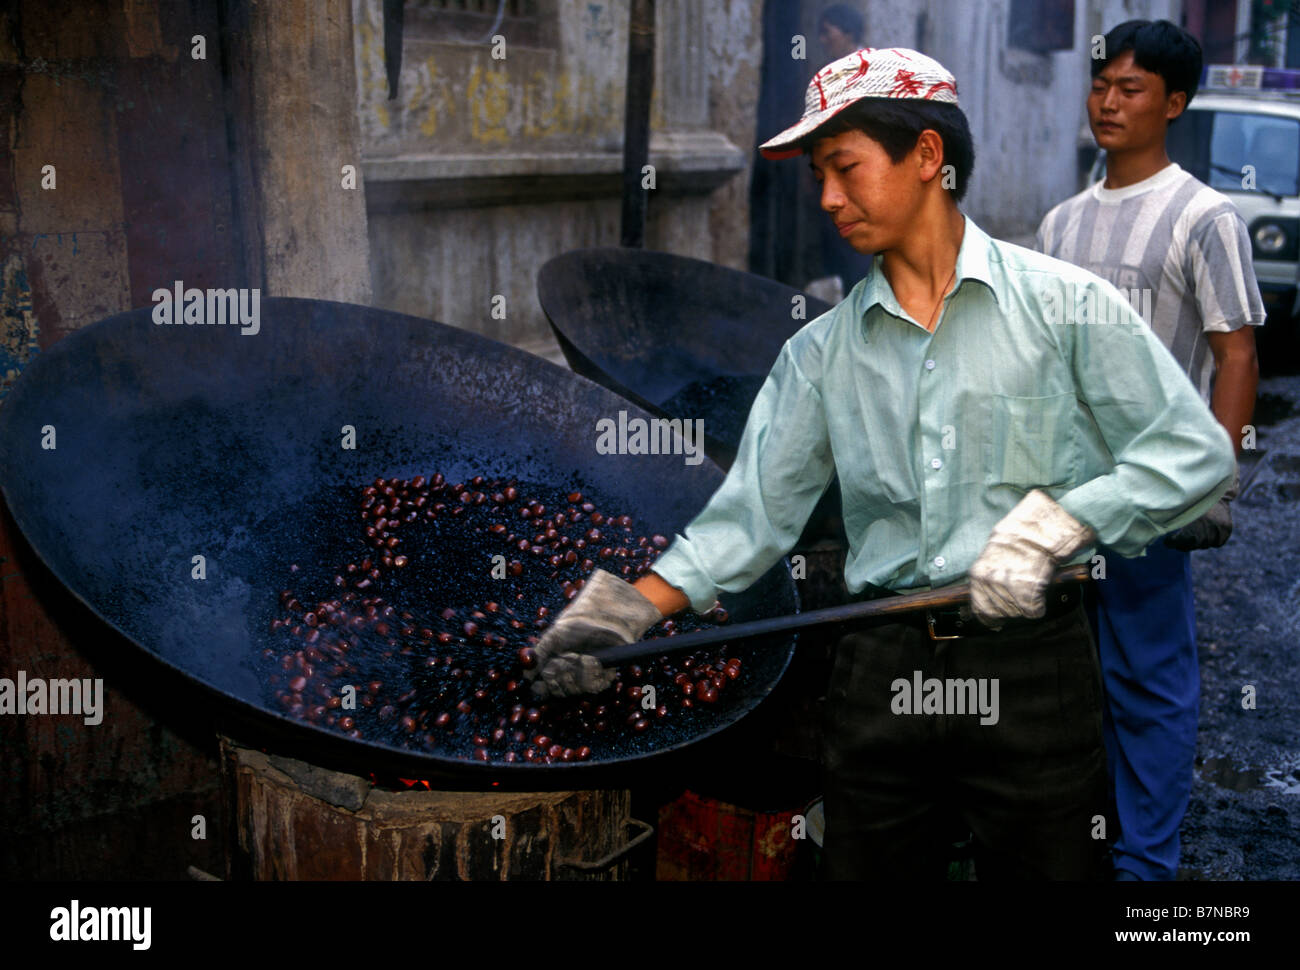 Chinese man, homme adulte, travailleur, travailler, cuisiner les châtaignes, feu de charbon, giant wok, capitale, Kunming, Province du Yunnan, Chine Banque D'Images